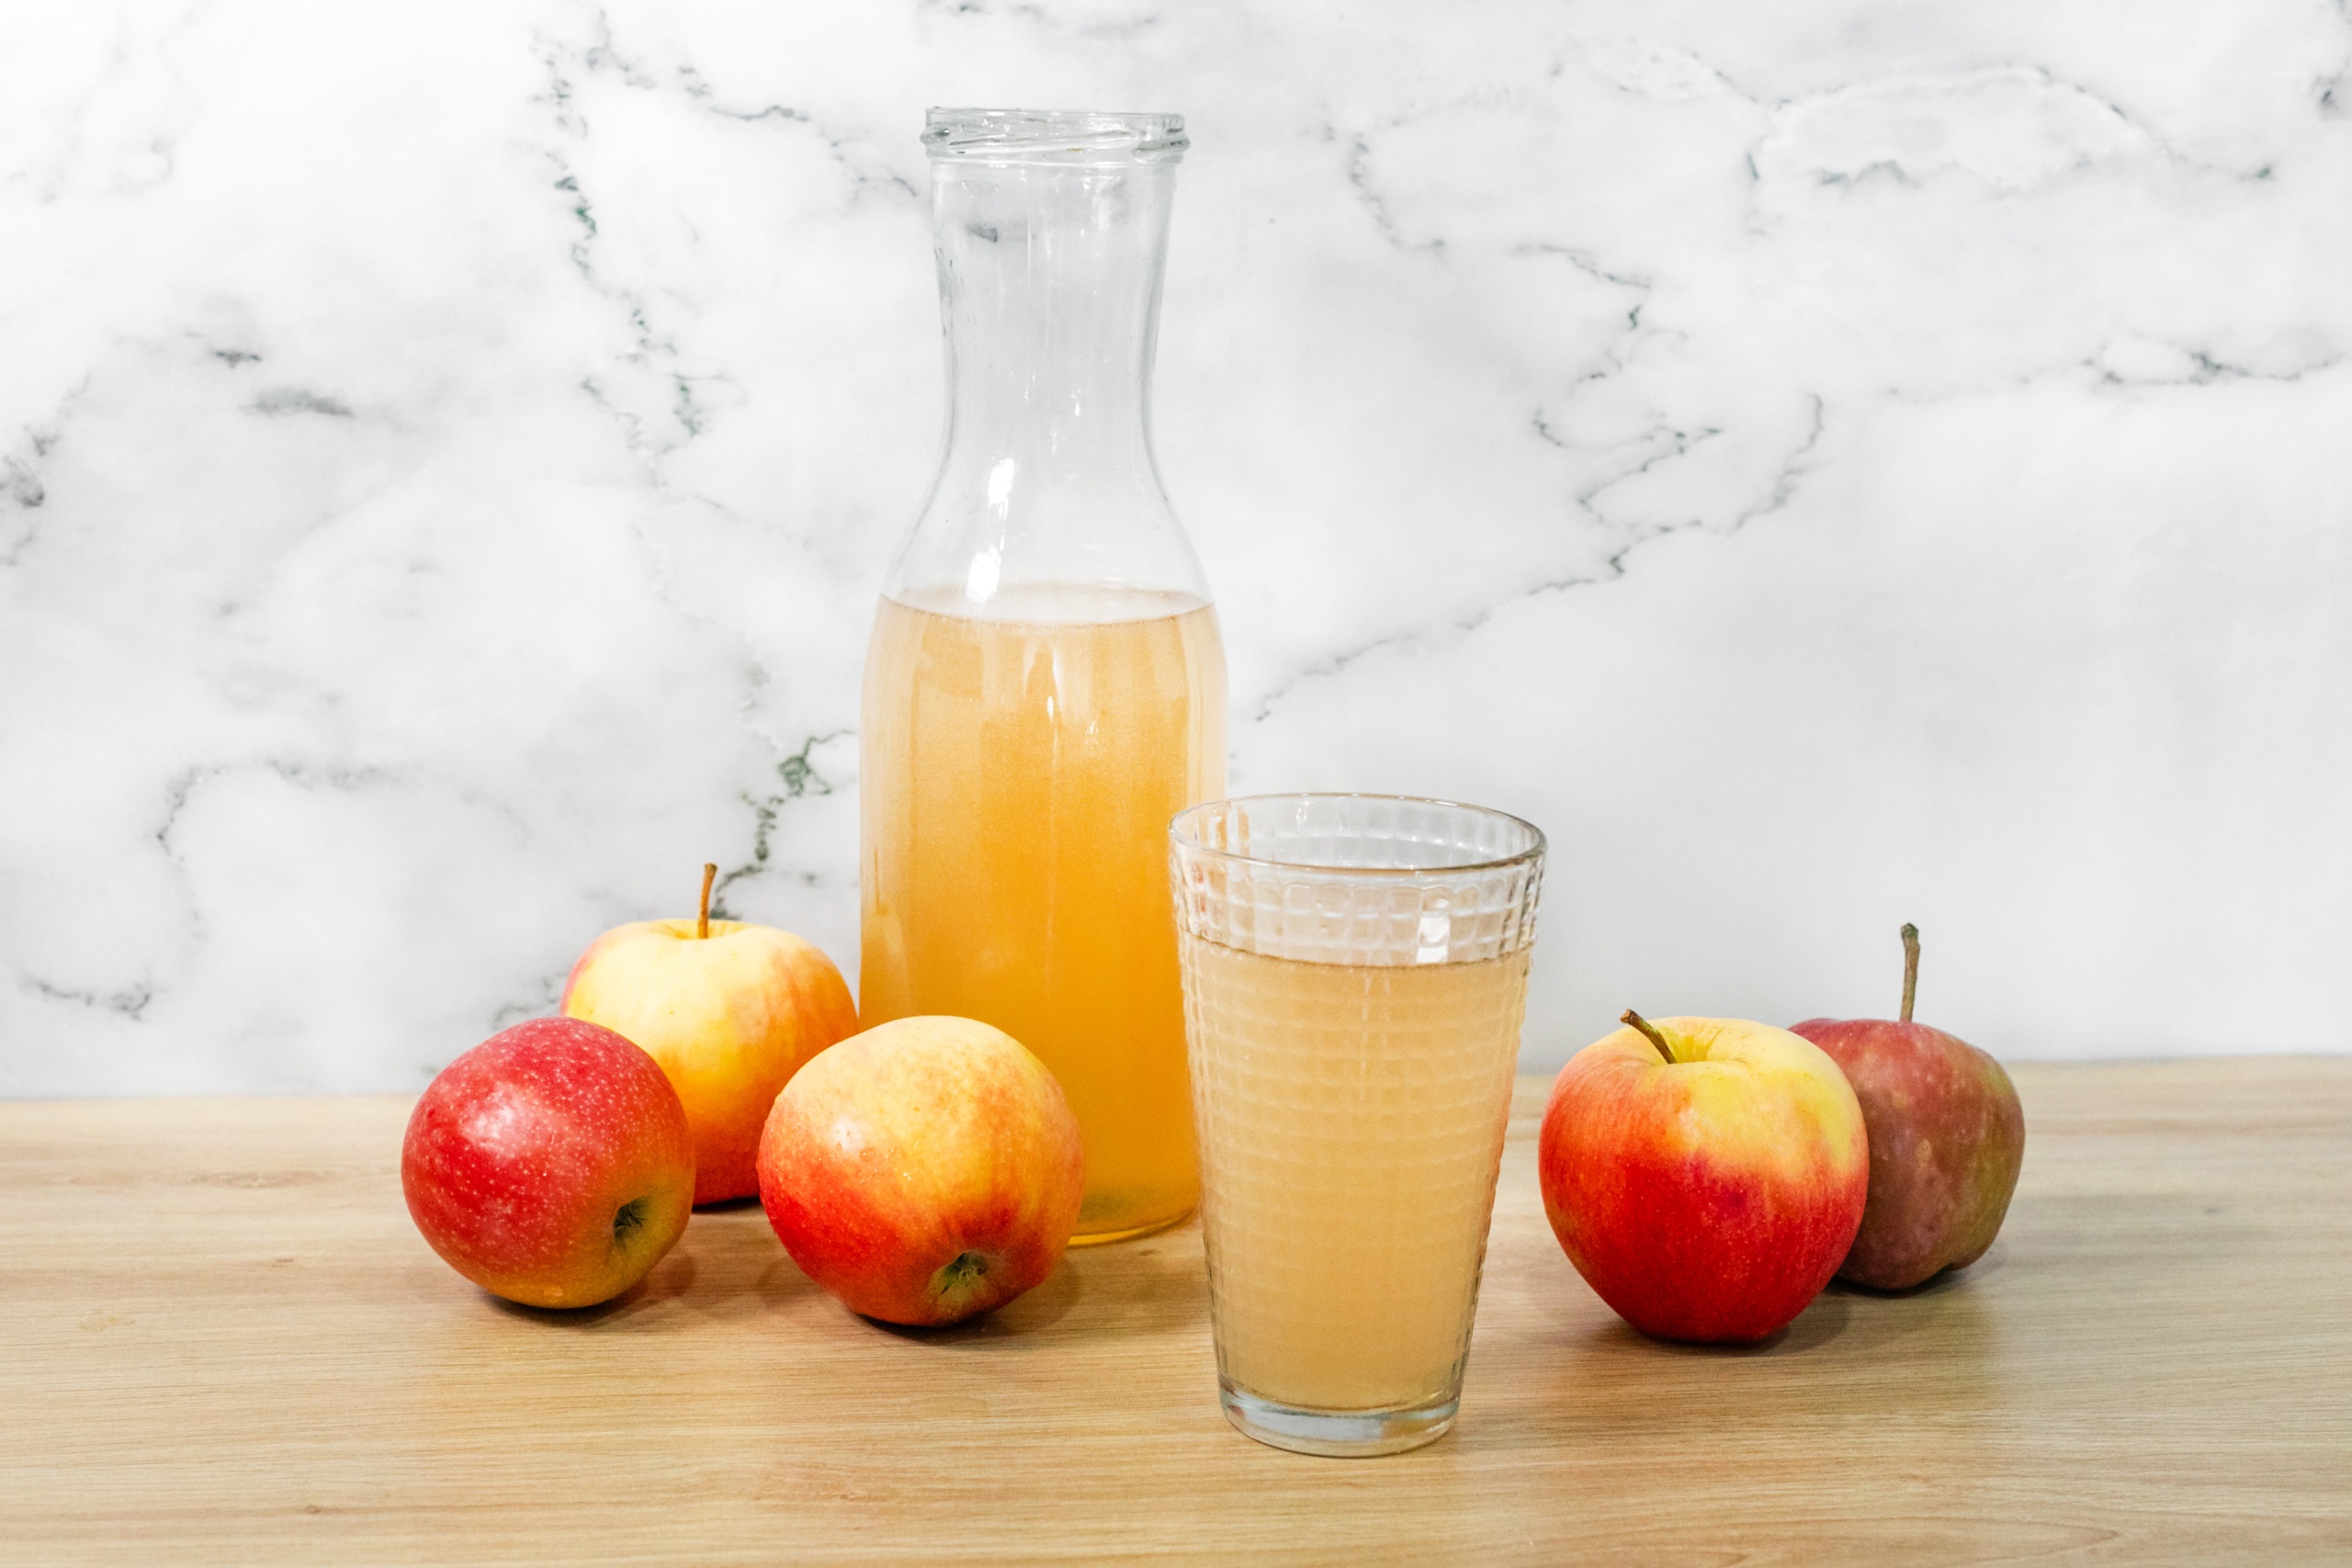 Как приготовить яблочный сидр в домашних условиях, чтобы не отравиться